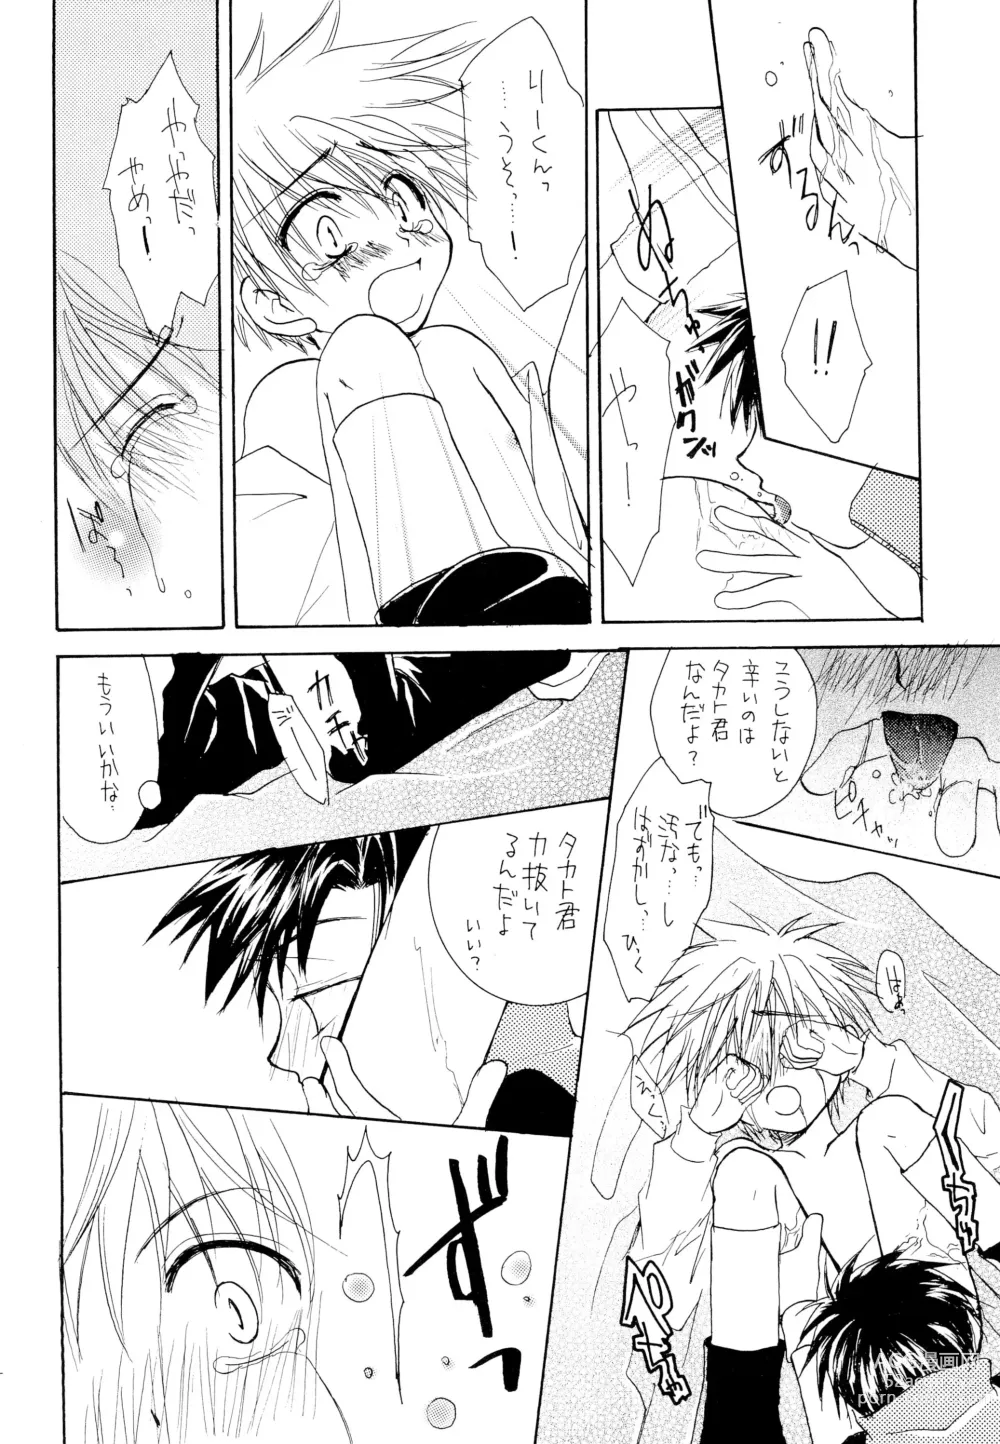 Page 14 of doujinshi LiTaka 2